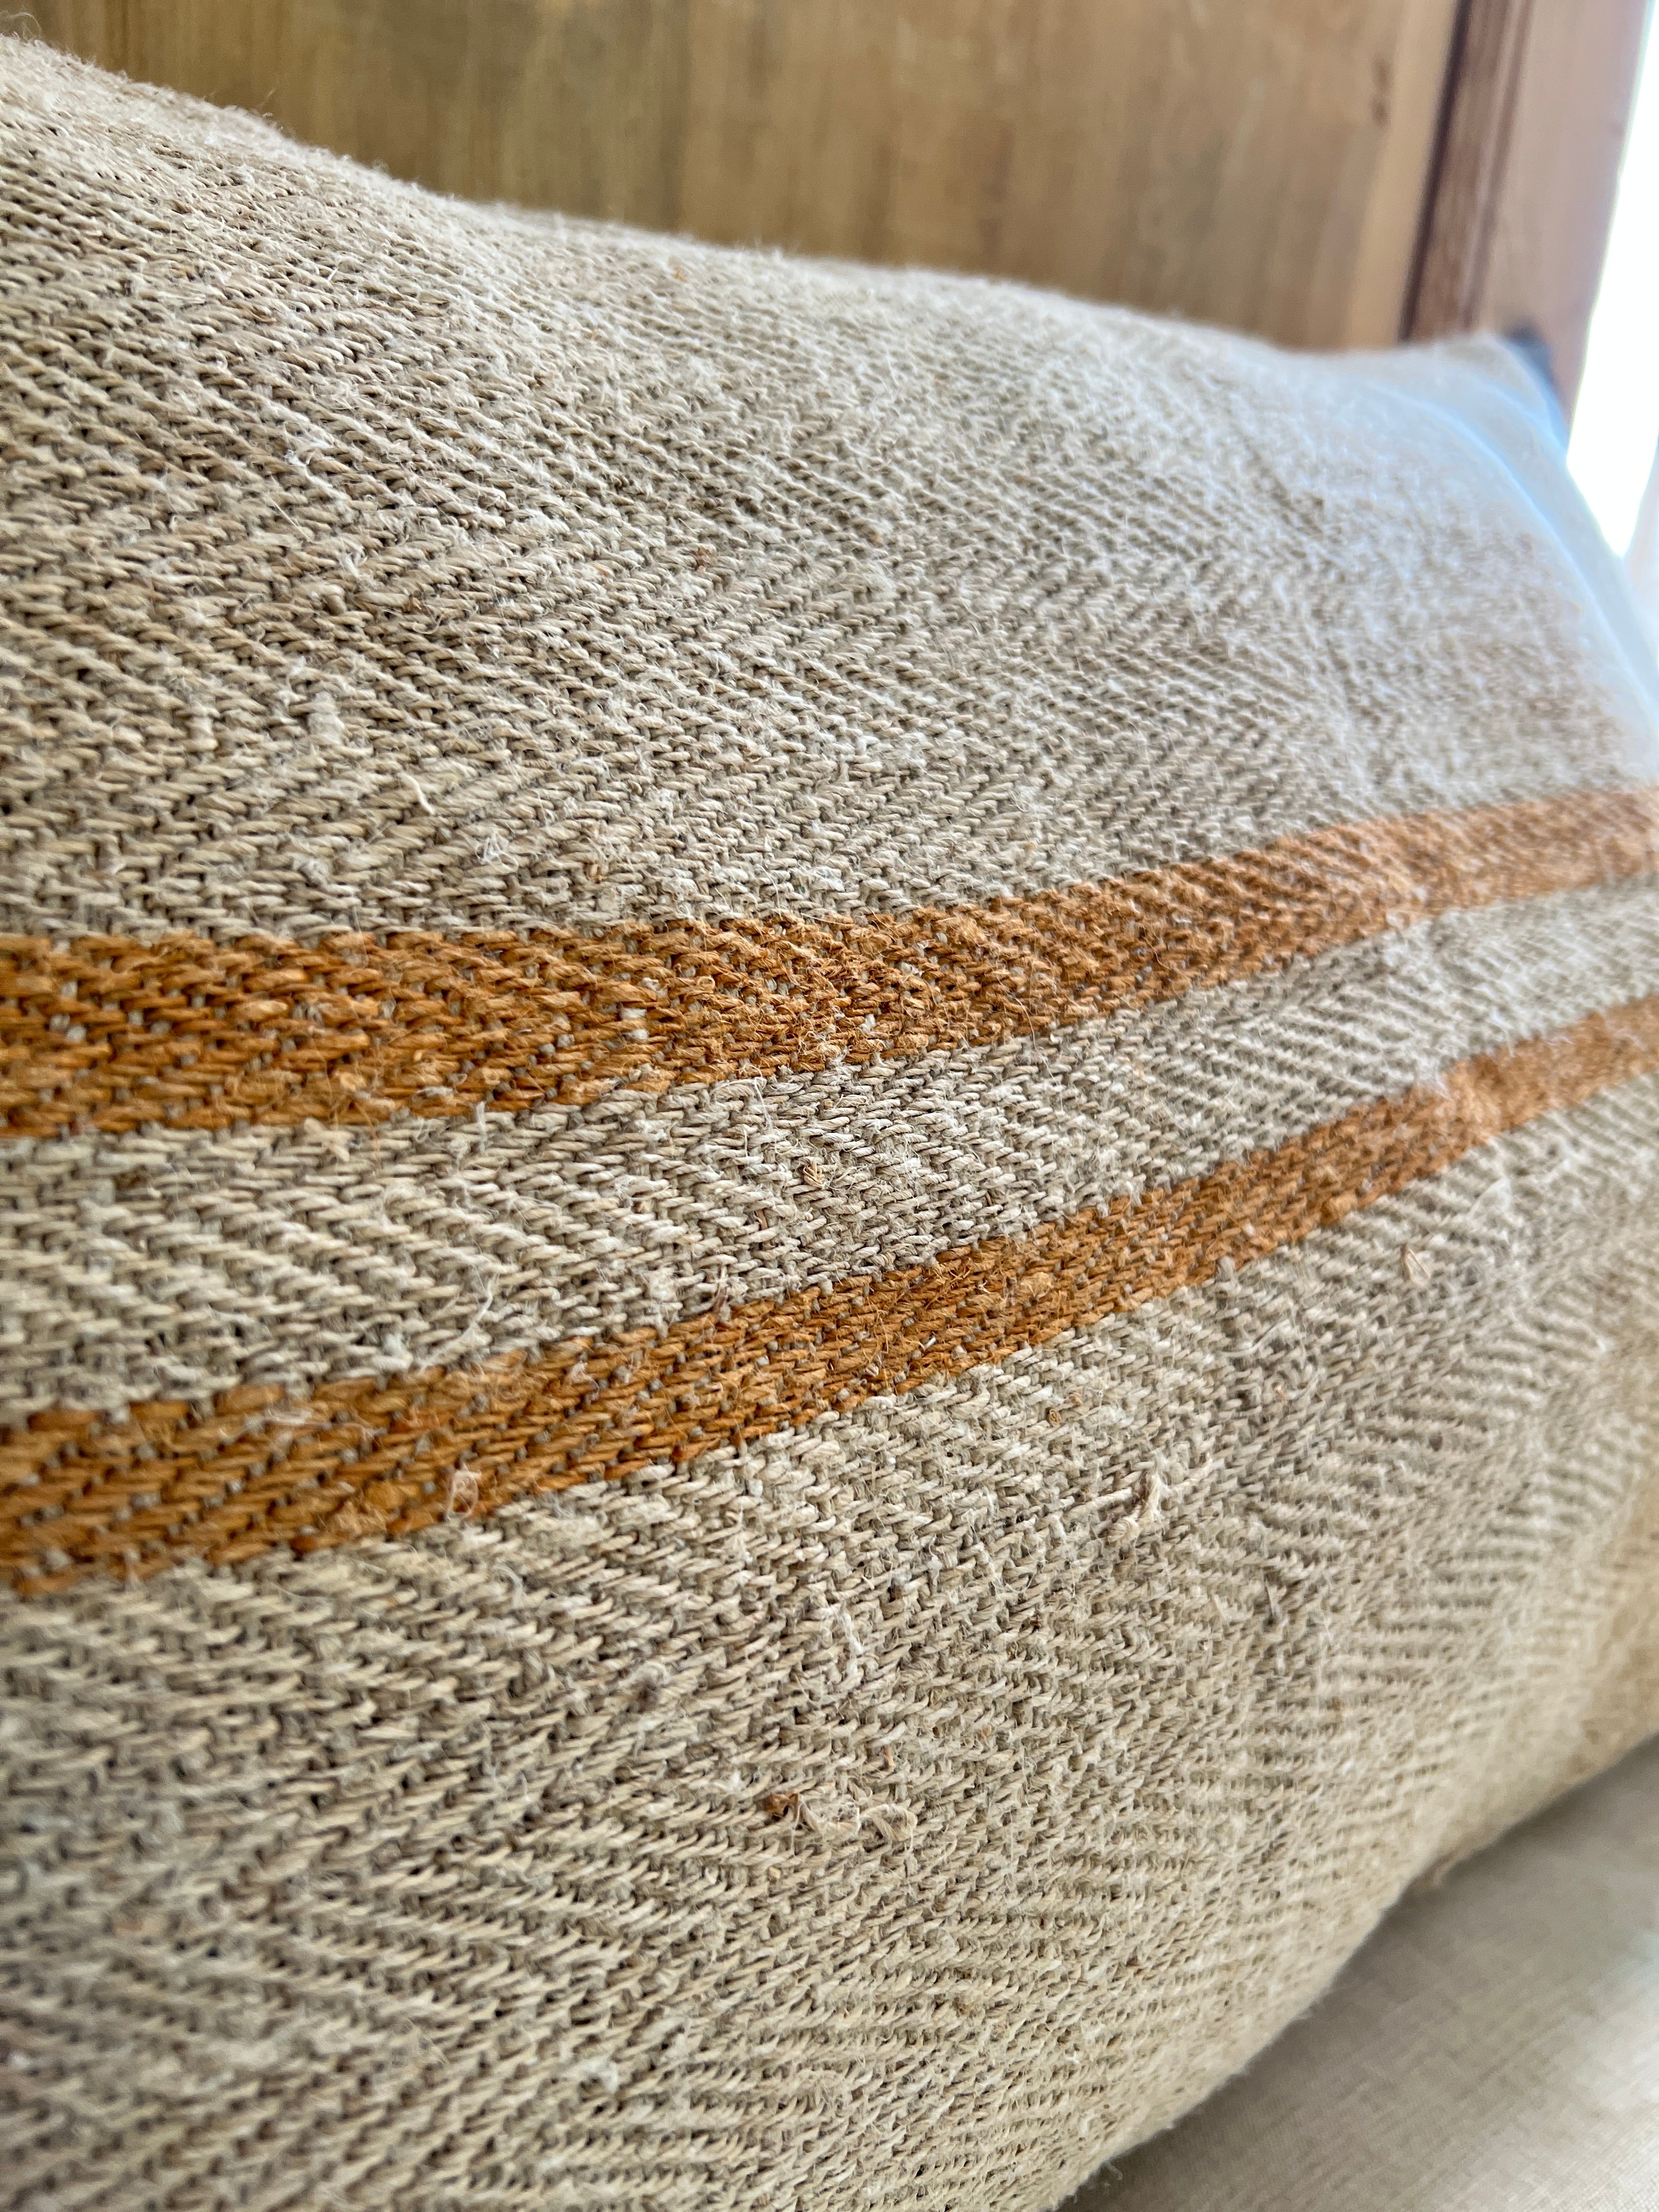 Cushion cover grain bag green stripes